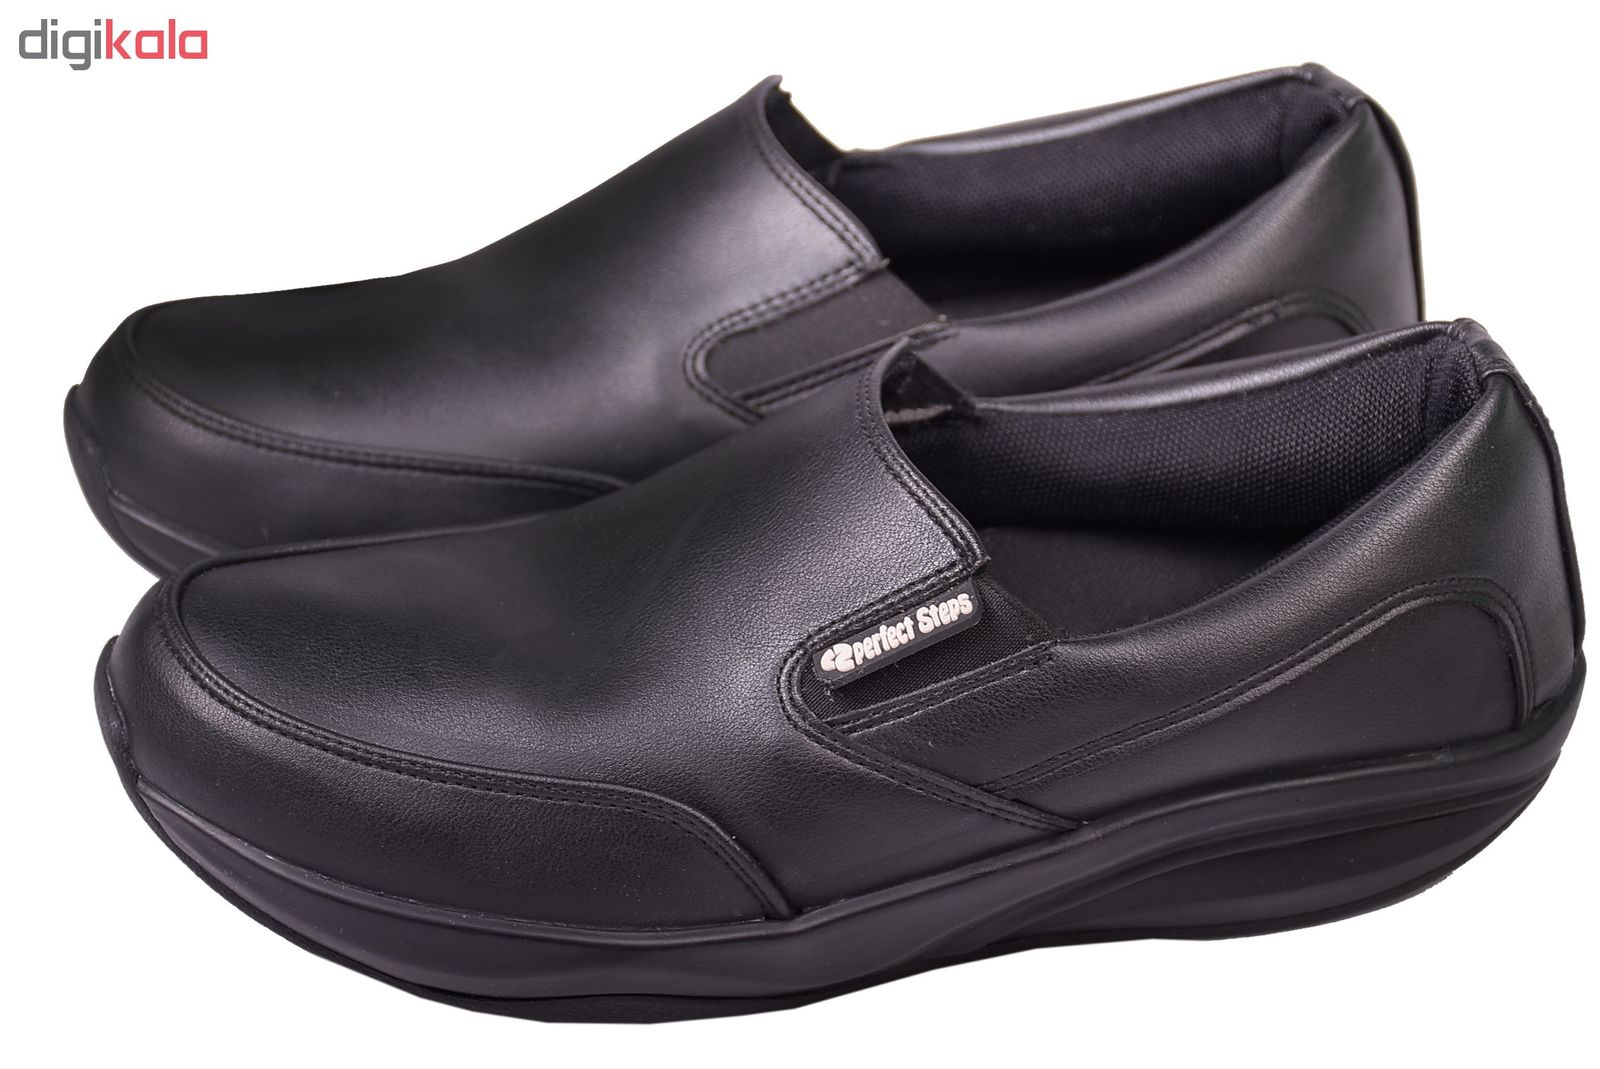 کفش مردانه پرفکت استپس مدل پریمو کد 1983 رنگ مشکی -  - 2